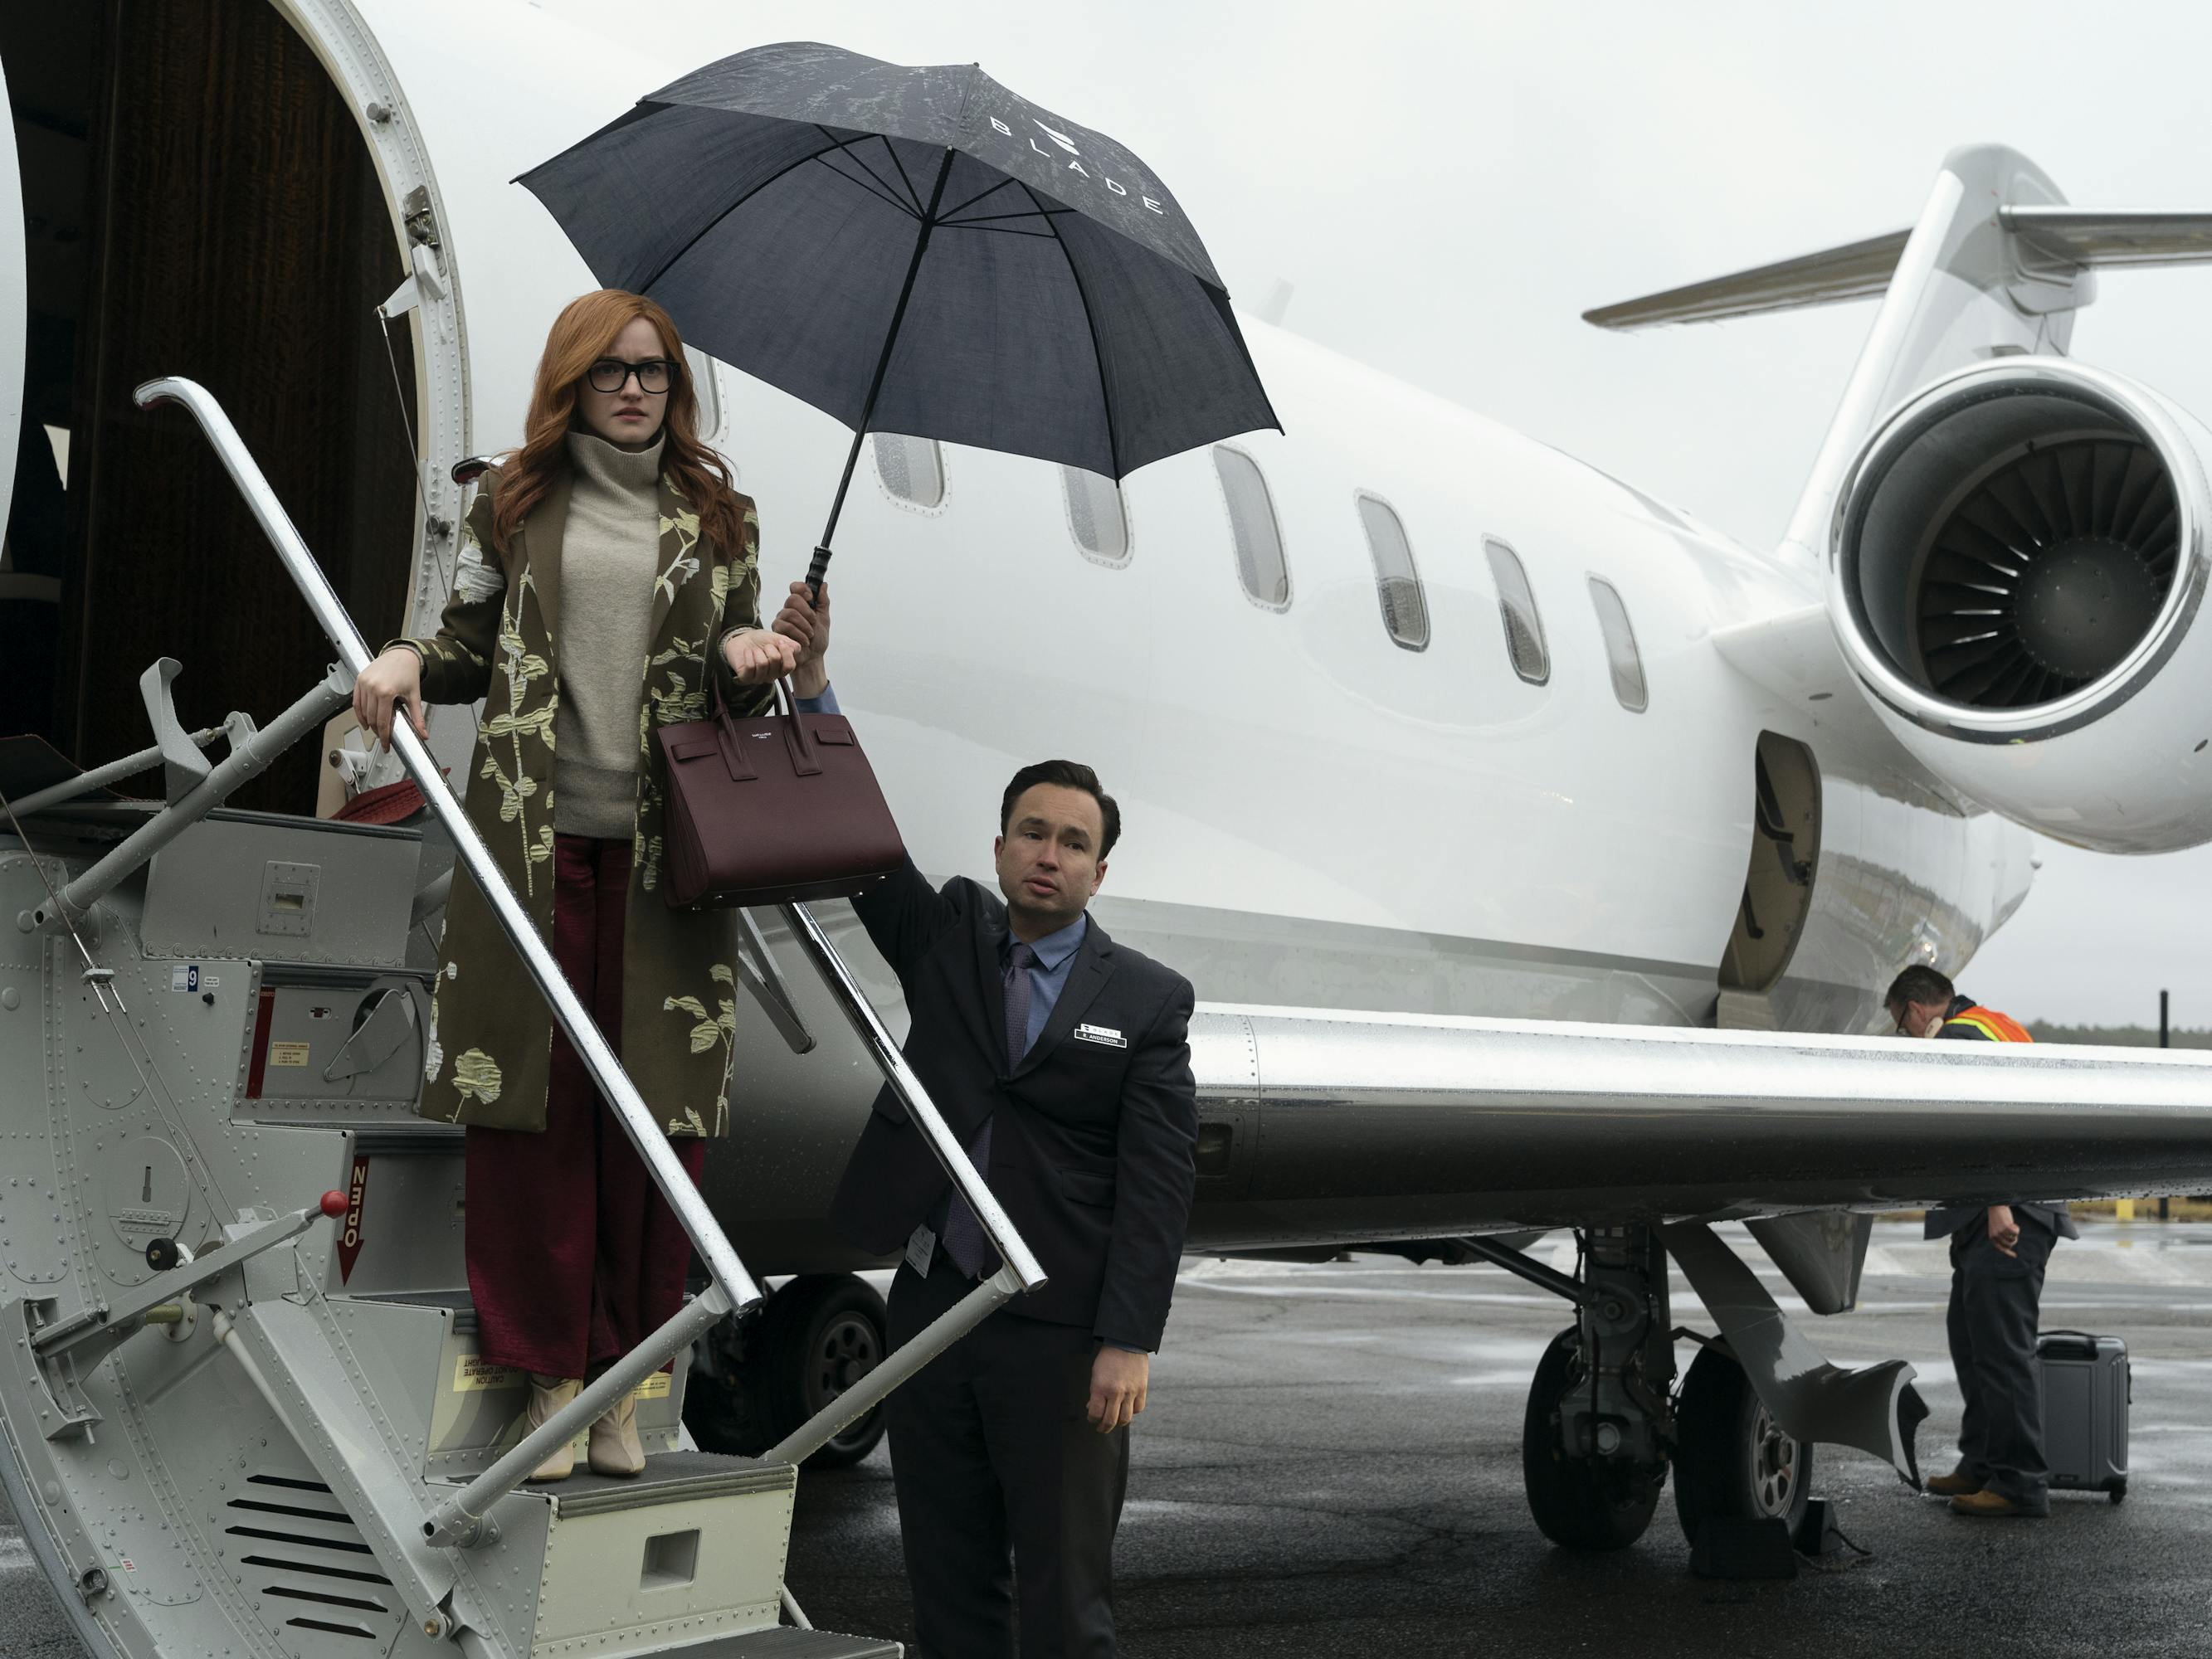 Julia Garner dismounts a private plane with a massive black umbrella.